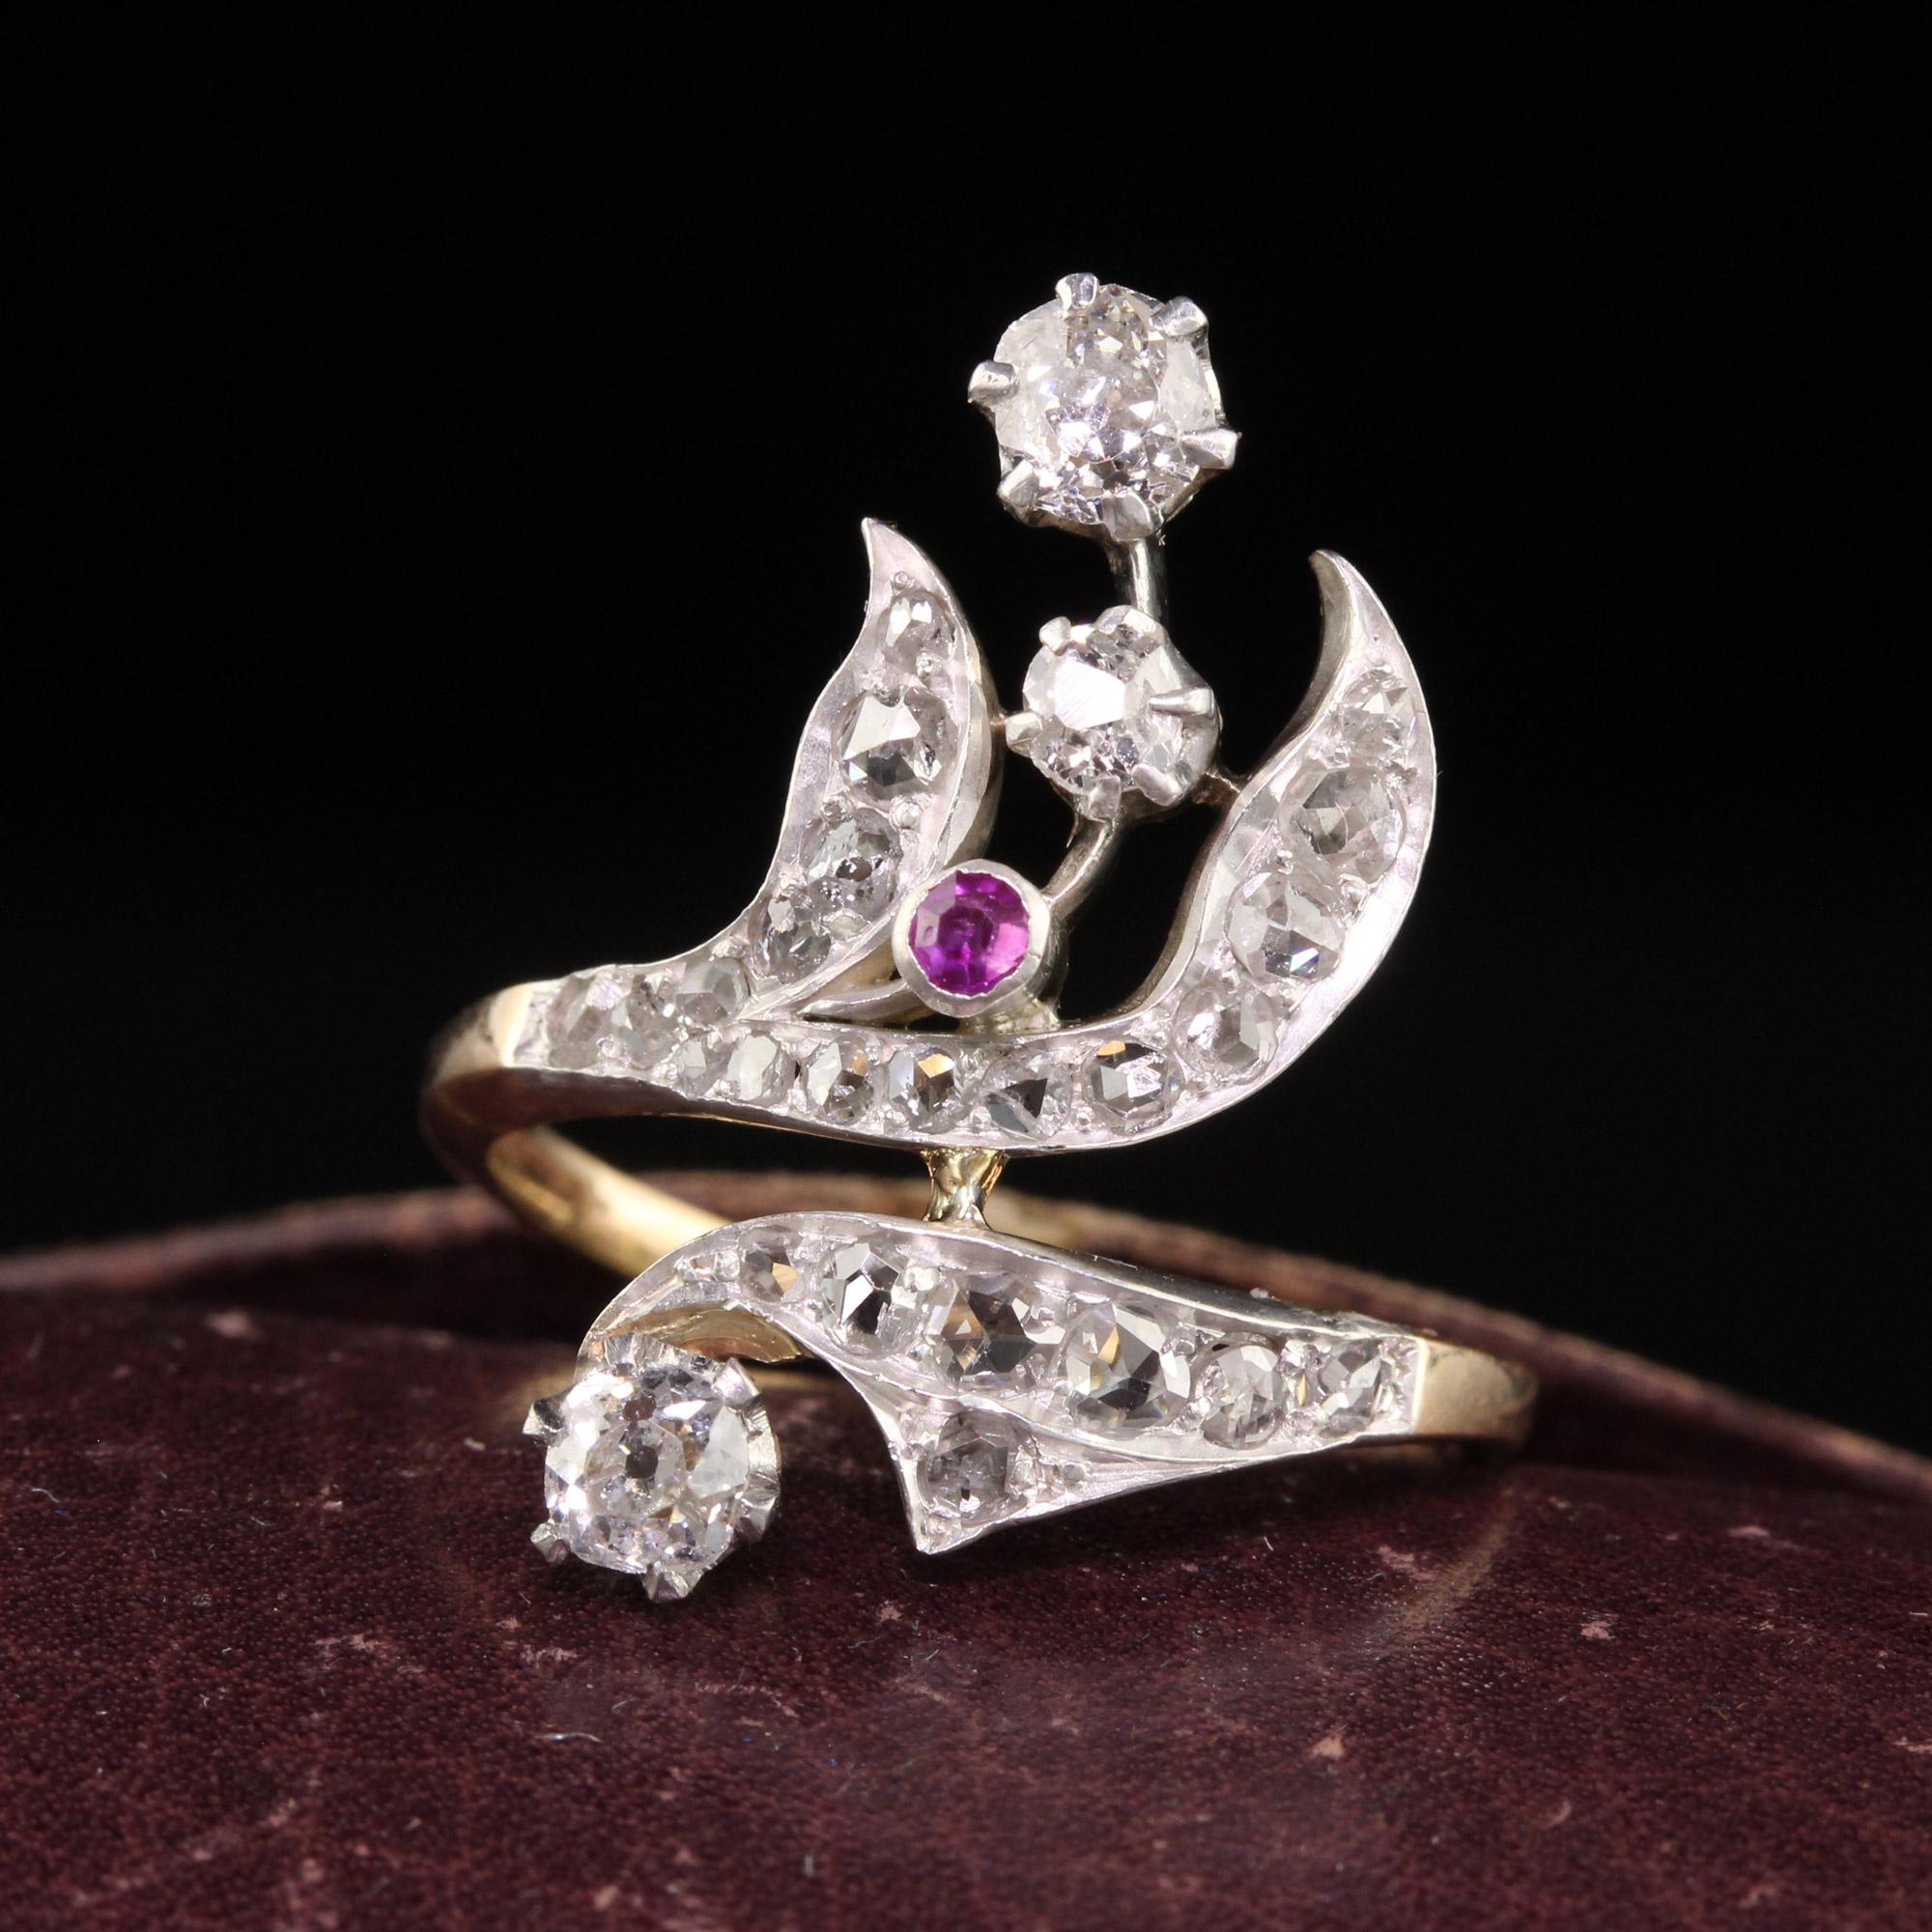 Schöne antike viktorianische 18K Gelbgold Silber Top Rose Cut und Rubin Floral Ring. Dieser wunderschöne Ring ist aus 18k Gelbgold und Silber gefertigt. Der Ring ist mit Diamanten im Rosenschliff auf den Blütenblättern und drei Diamanten im